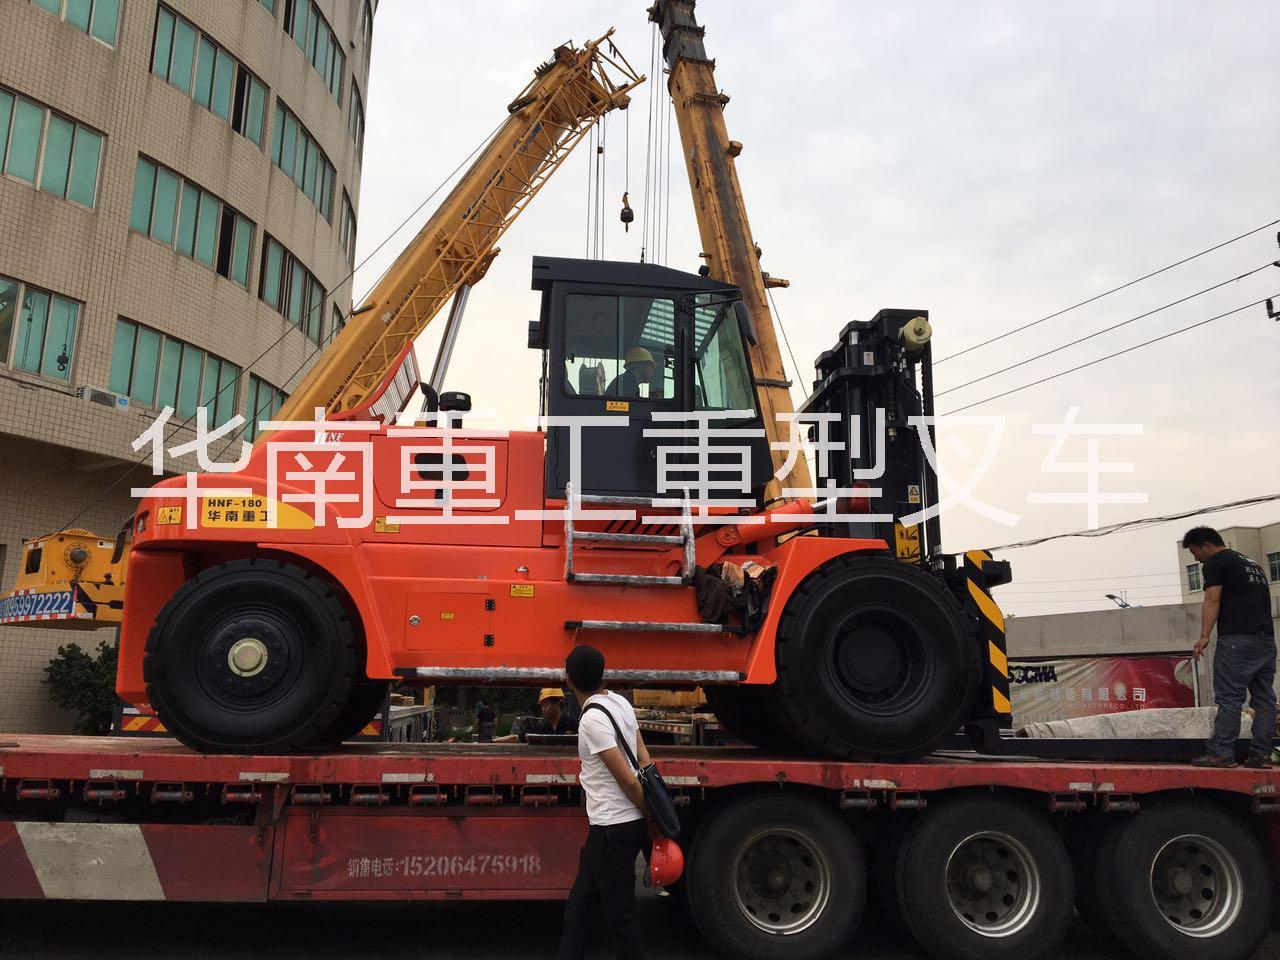 18吨叉车 HNF-180型大吨位叉车生产厂家华南重工18吨叉车